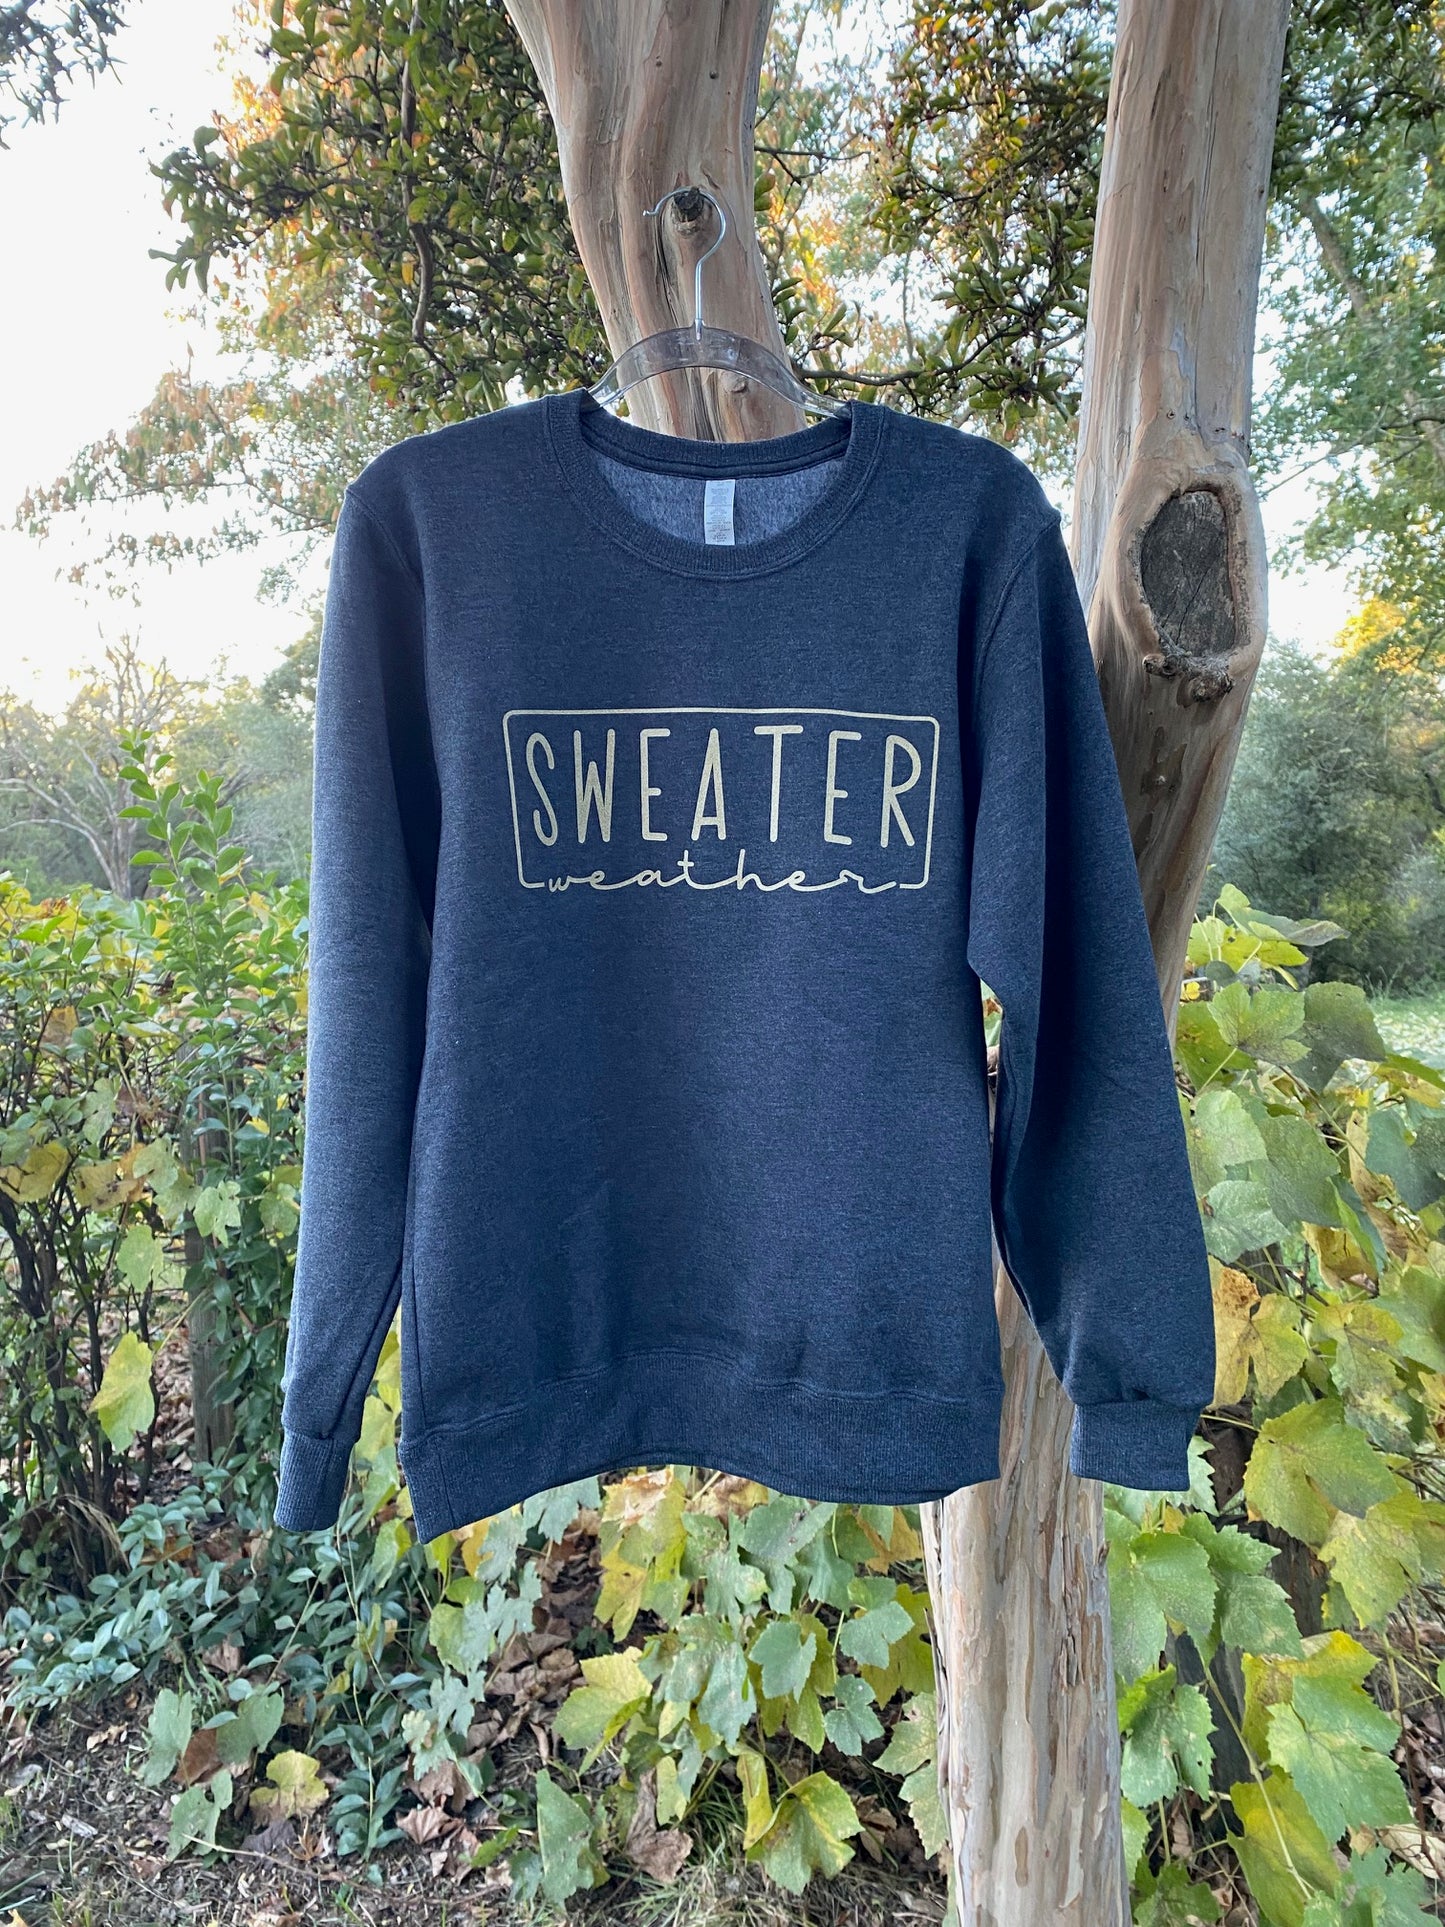 Sweater Weather Heathered Black Eco Premium Fleece Sweatshirt